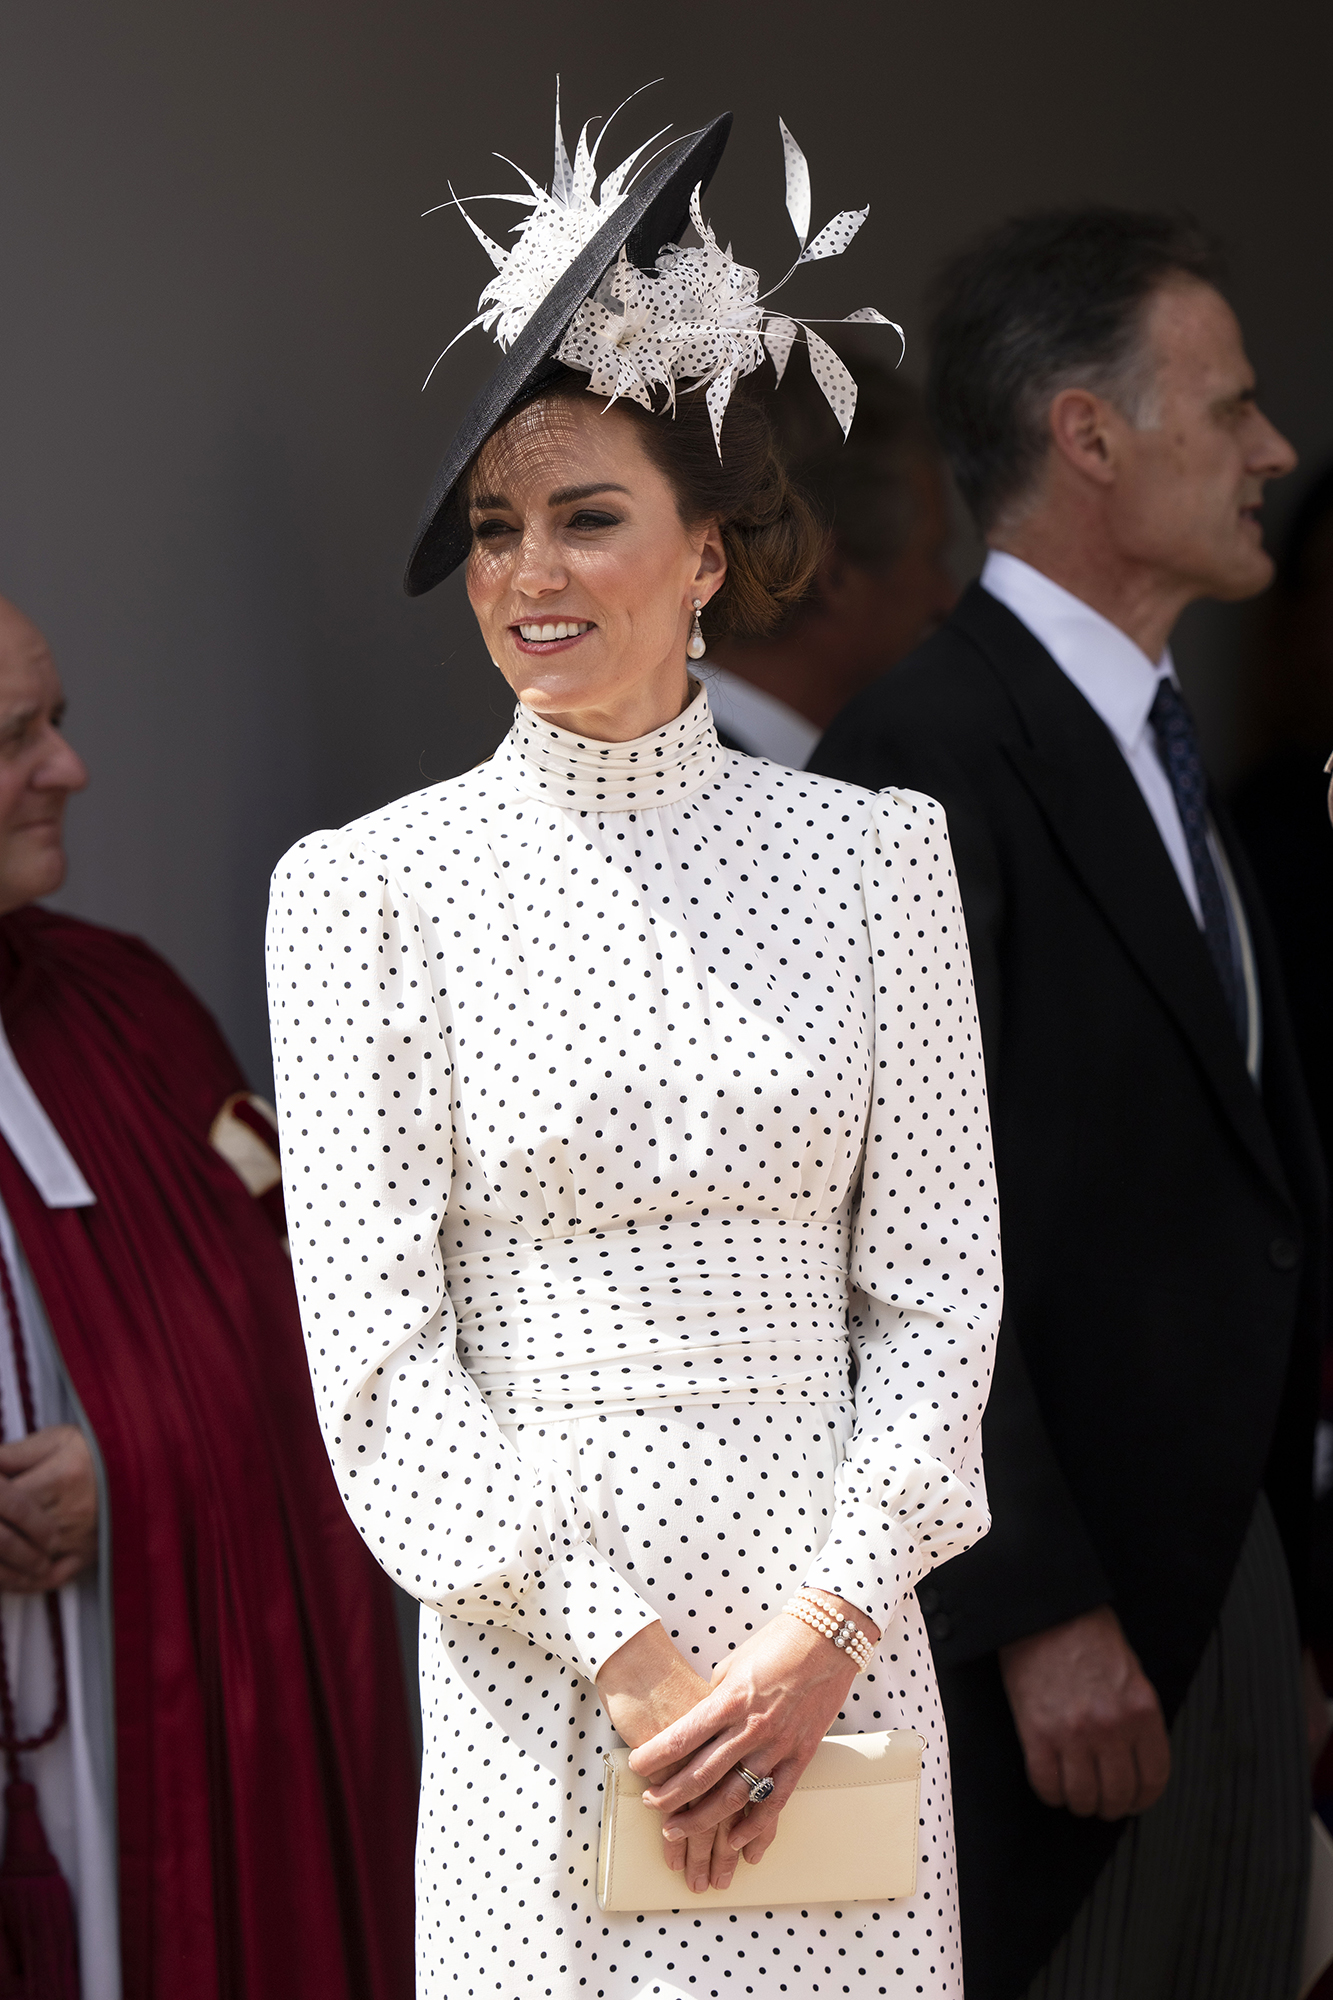 Kate Middleton Stuns in White Polka Dot Dress at Order of the Garter ...